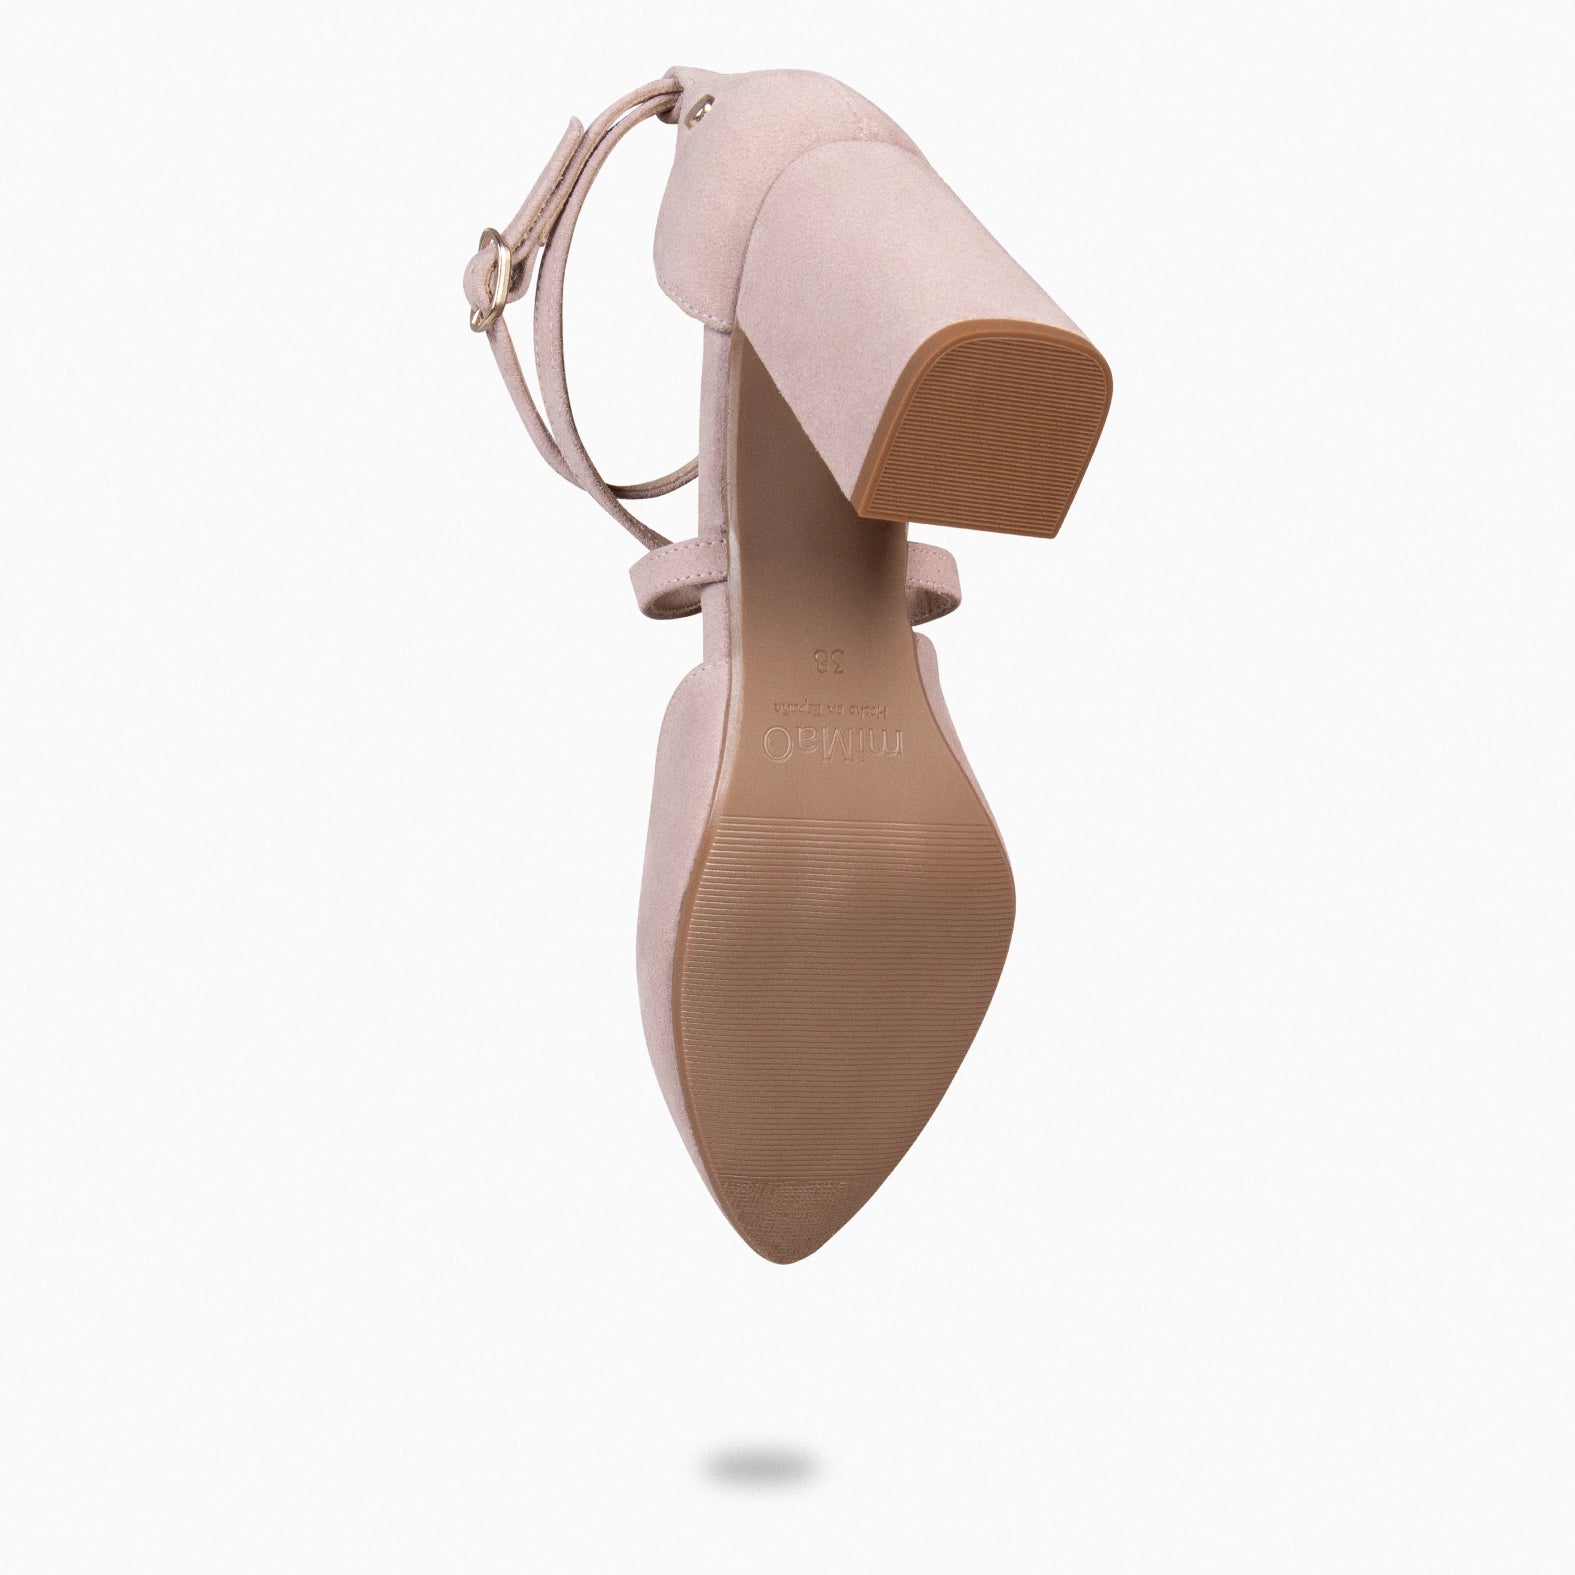 ARIEL – NUDE Wide heel shoe